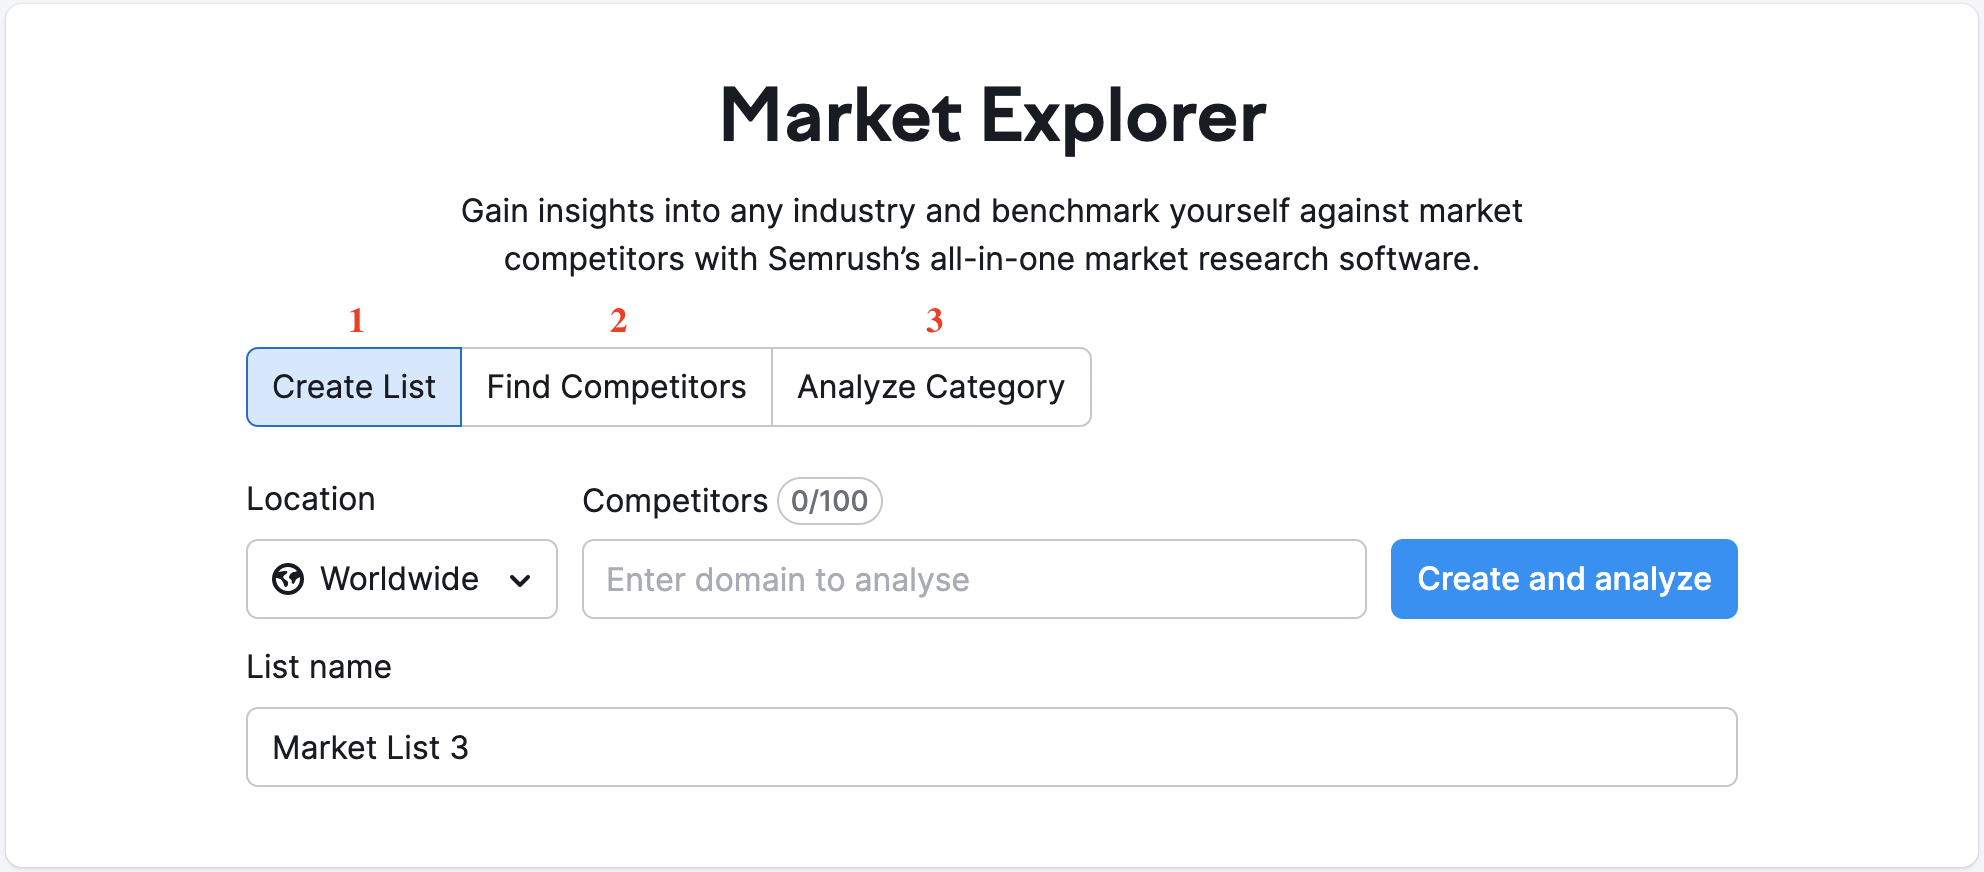 Page d’accueil de Market Explorer avec trois options disponibles mises en évidence par un chiffre rouge : 1 – Créer une liste, 2 – Trouver des concurrents, 3 – Analysez une catégorie